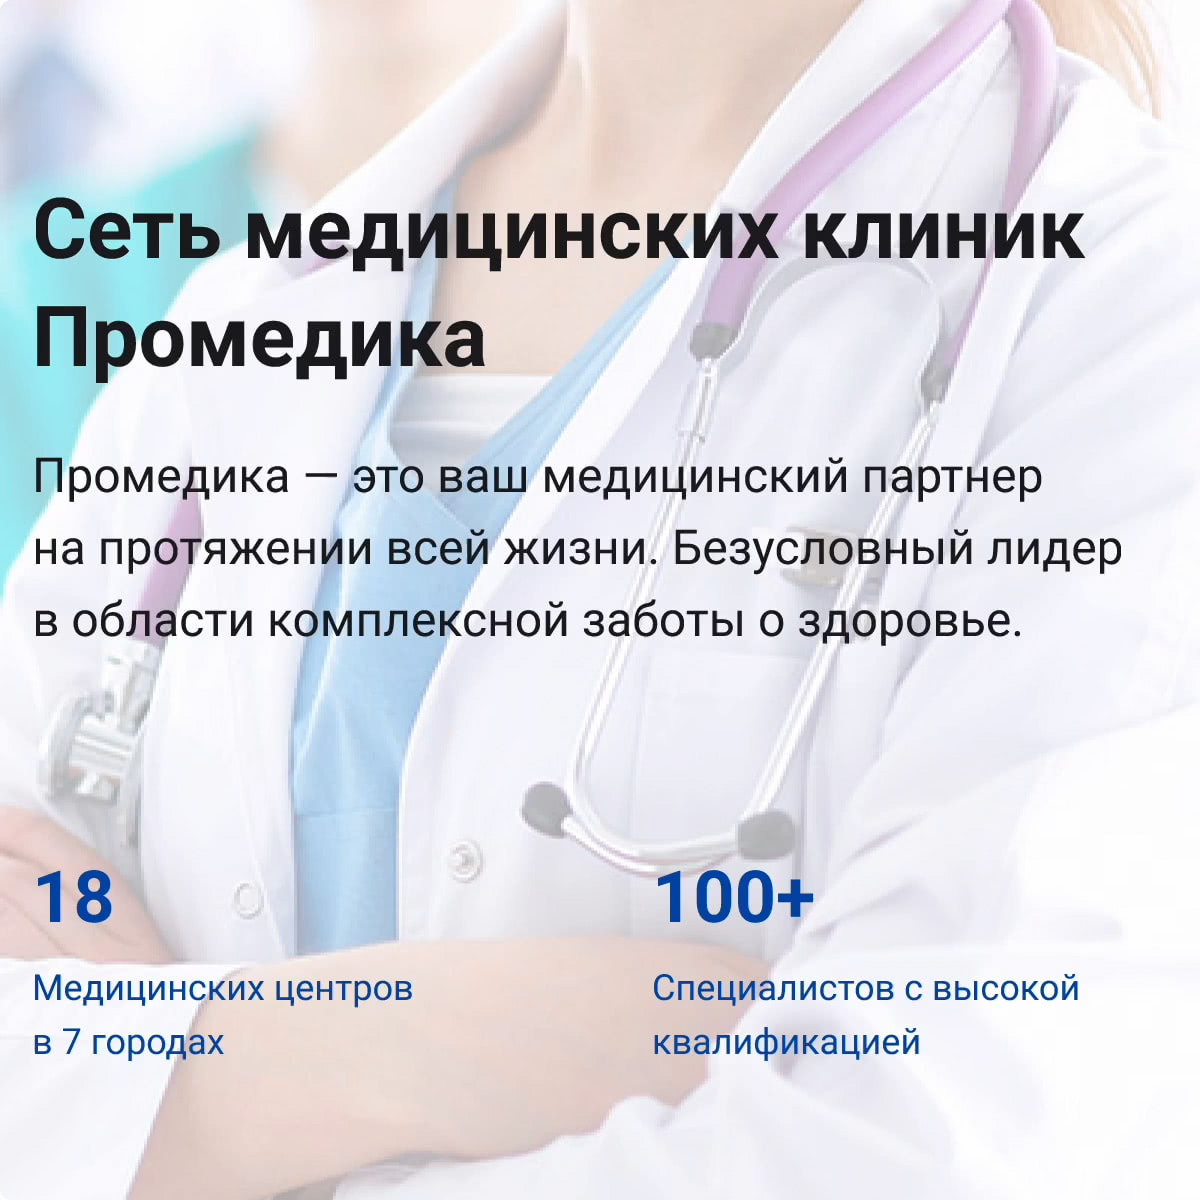 Сайт сети медицинских центров «Промедика»